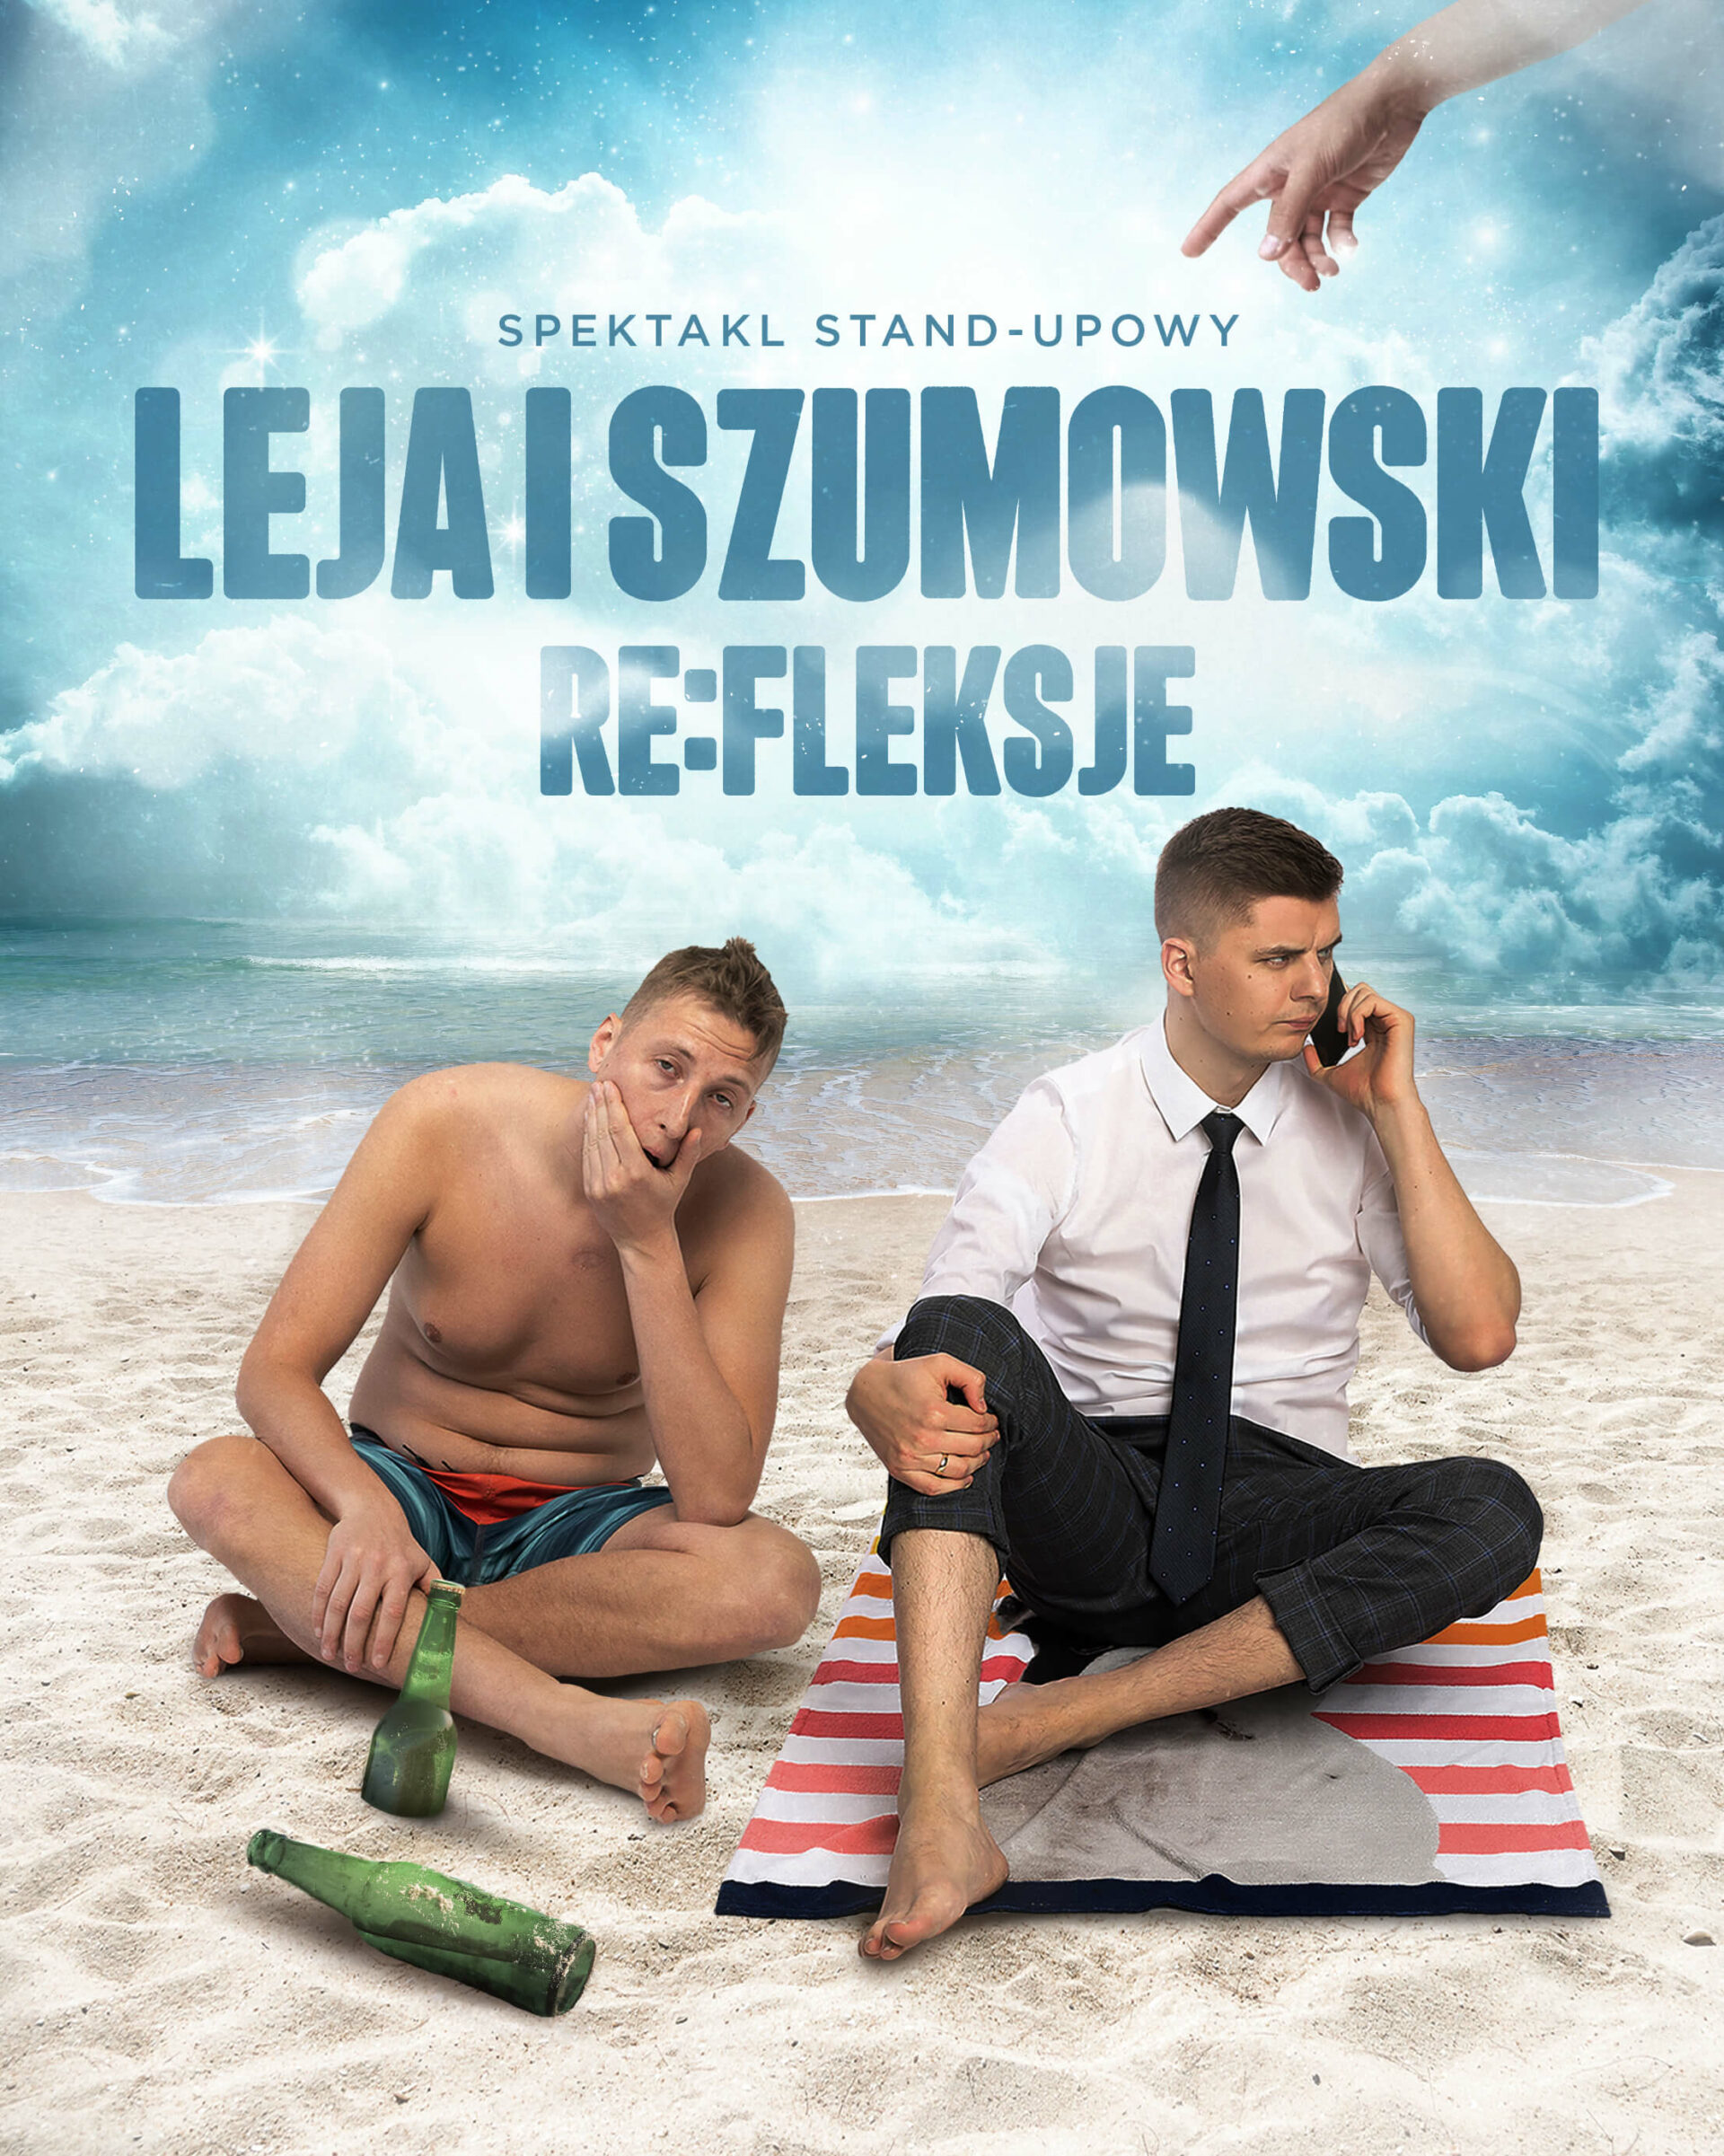 Spektakl stand-upowy RE:fleksje | Michał Leja i Piotr Szumowski